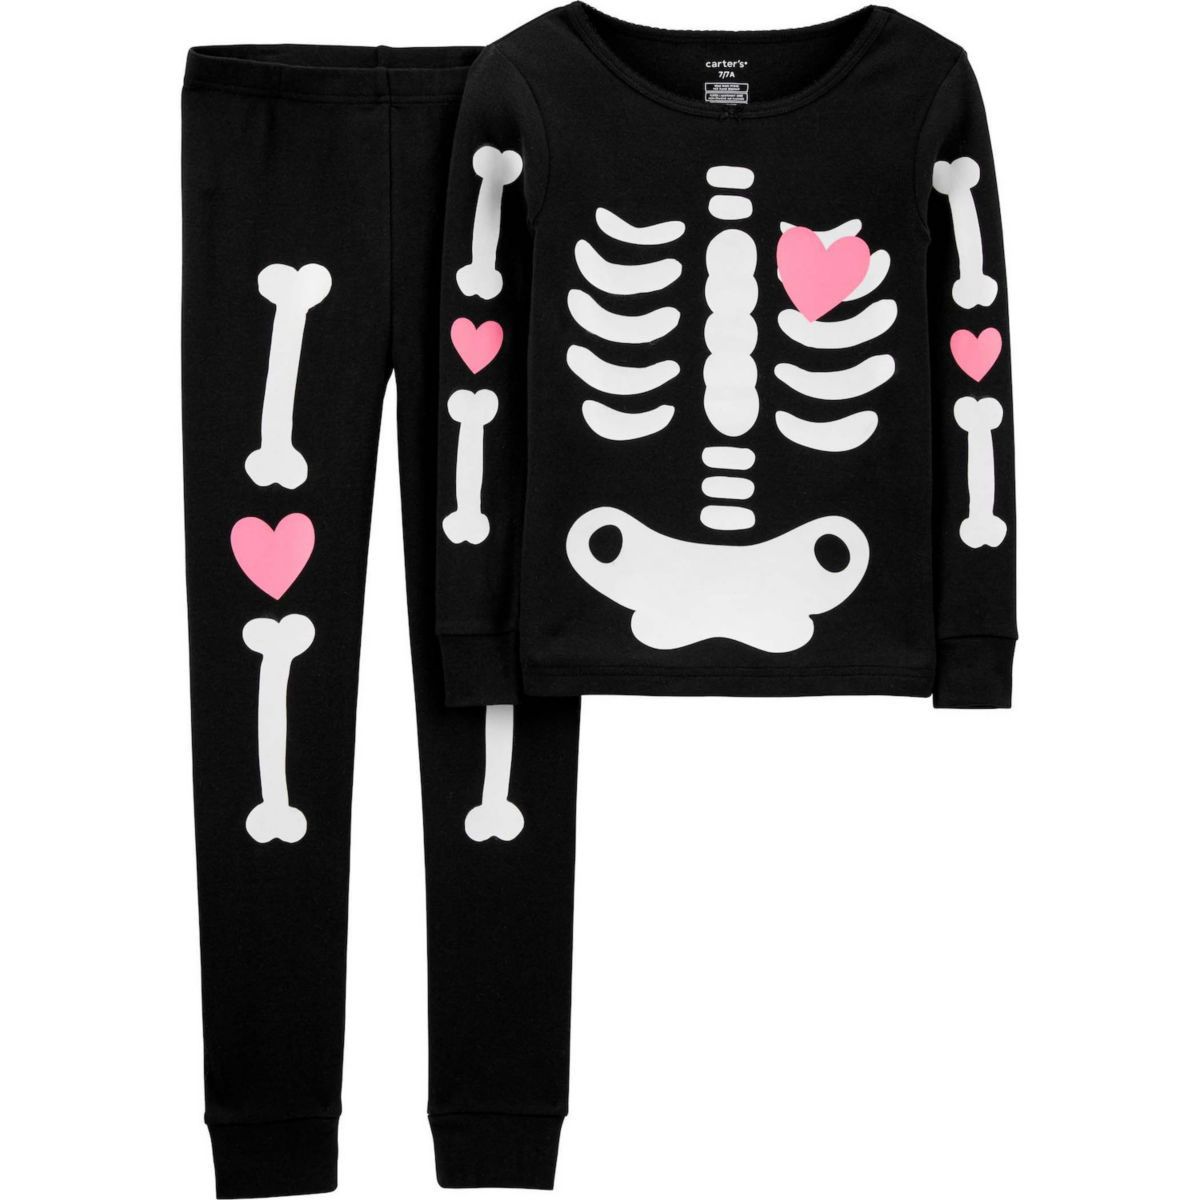 Pijamas de Halloween ou tendência pjs - pijamas infantis com padrão de esqueleto